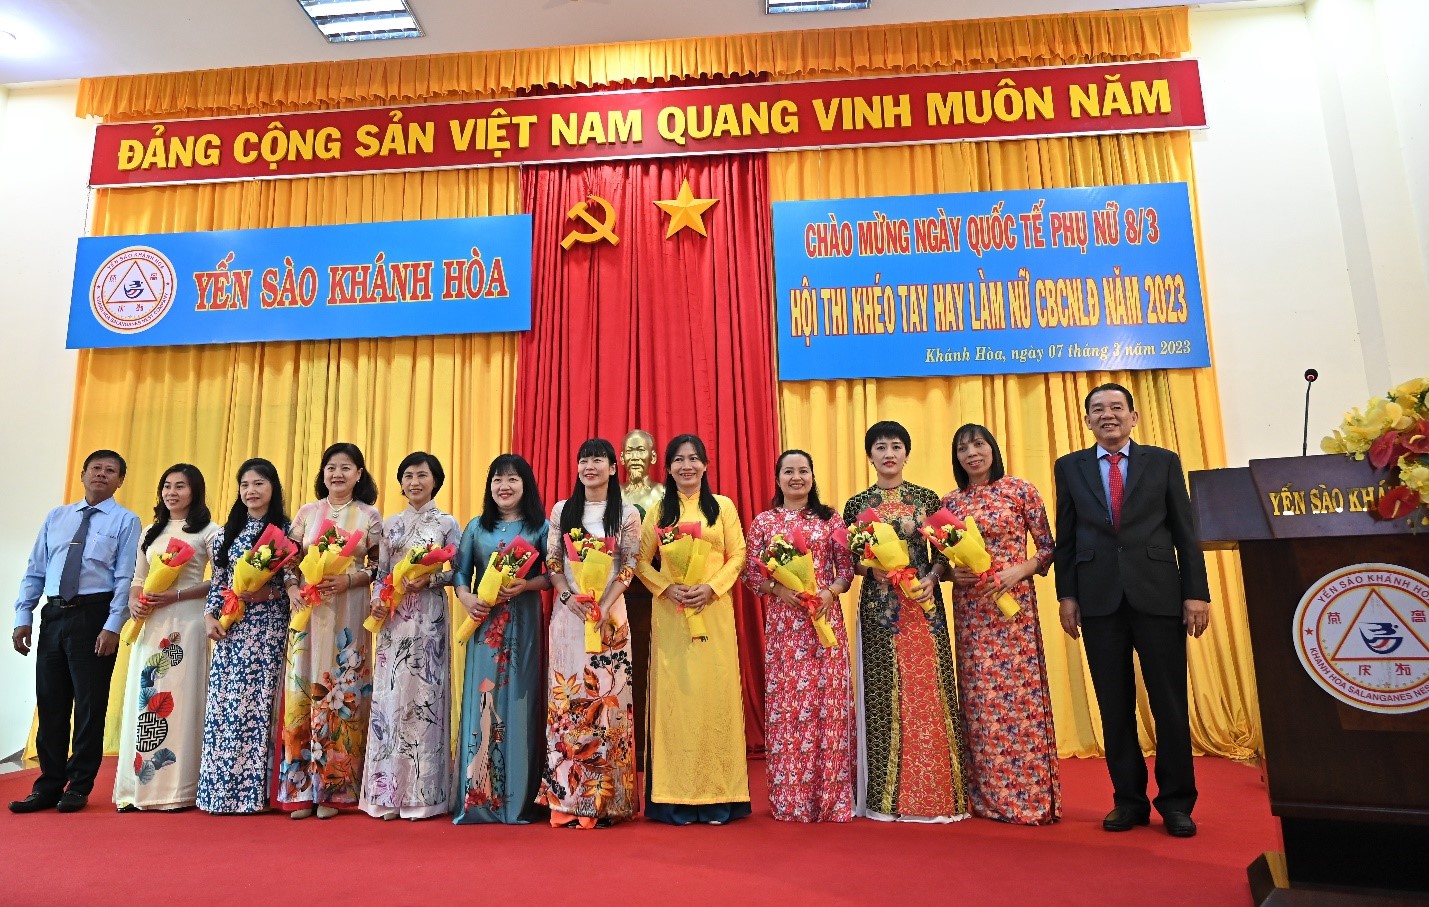 CB Nữ lãnh đạo Công Ty Yến Sào Khánh Hòa nhận hoa tặng từ Công Ty Yến Sào Khánh Hòa